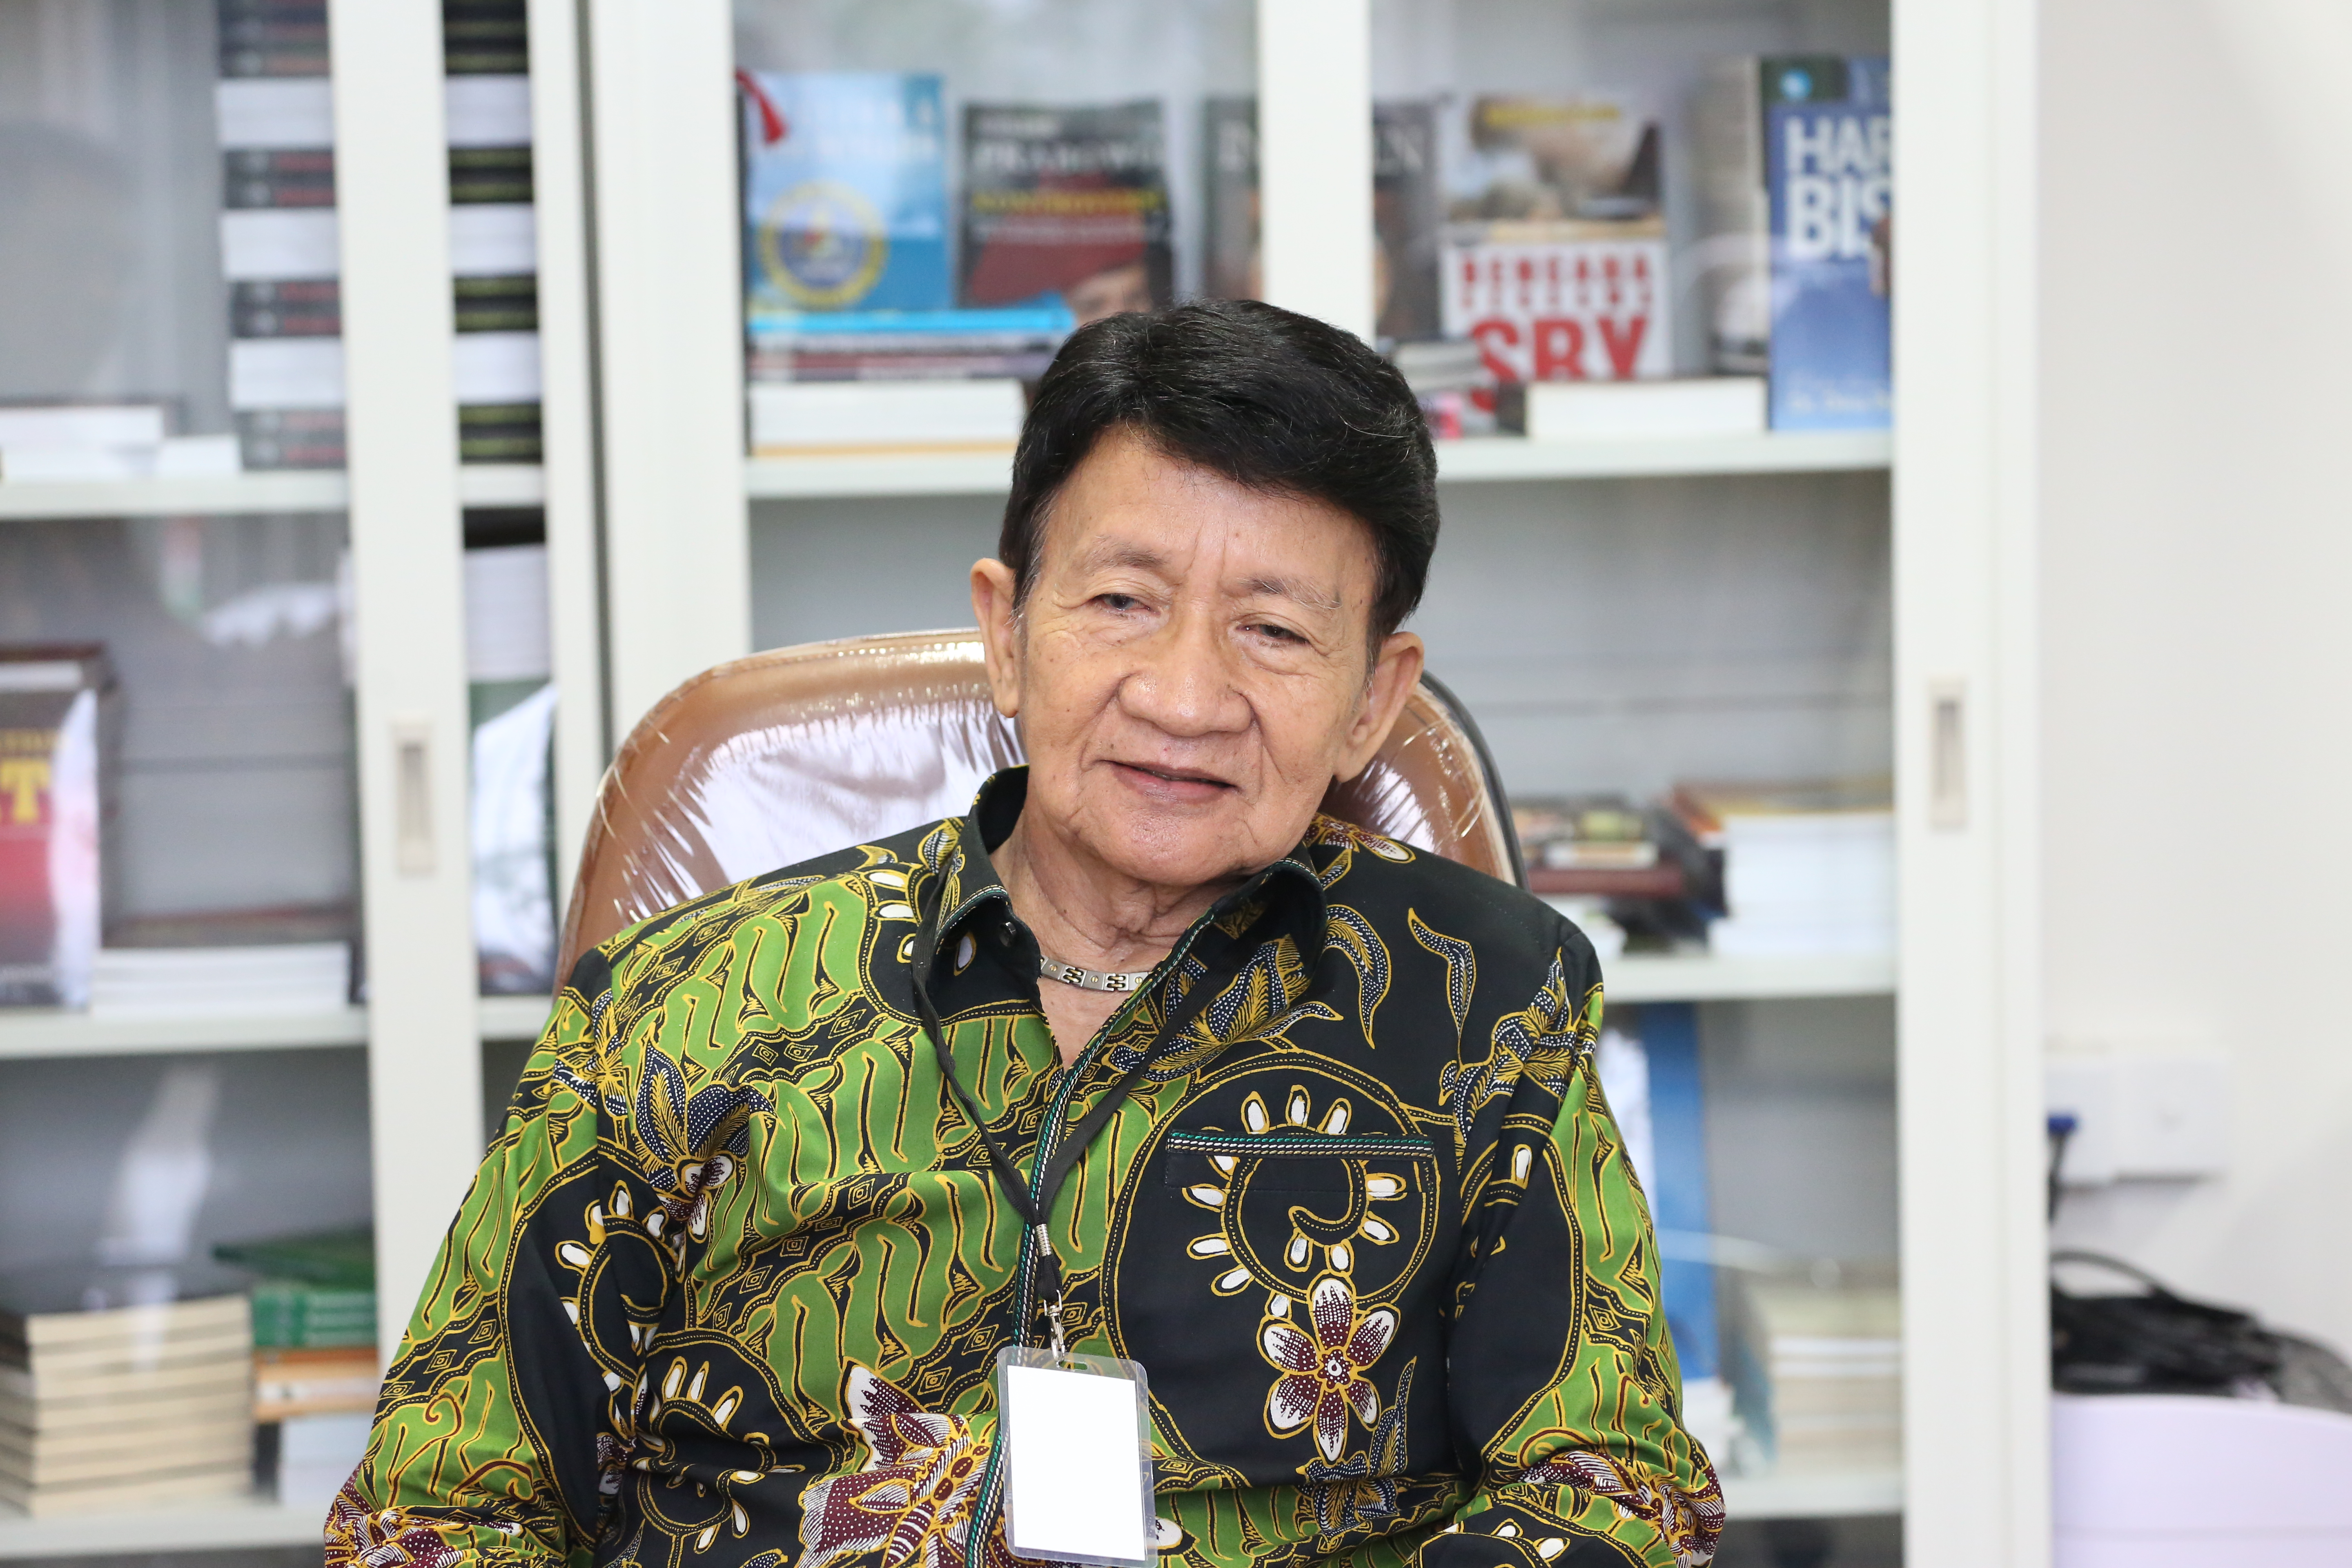  Prof. Chairuddin Ismail: Hukum sebaiknya membahagiakan rakyat, bukan menyengsarakan